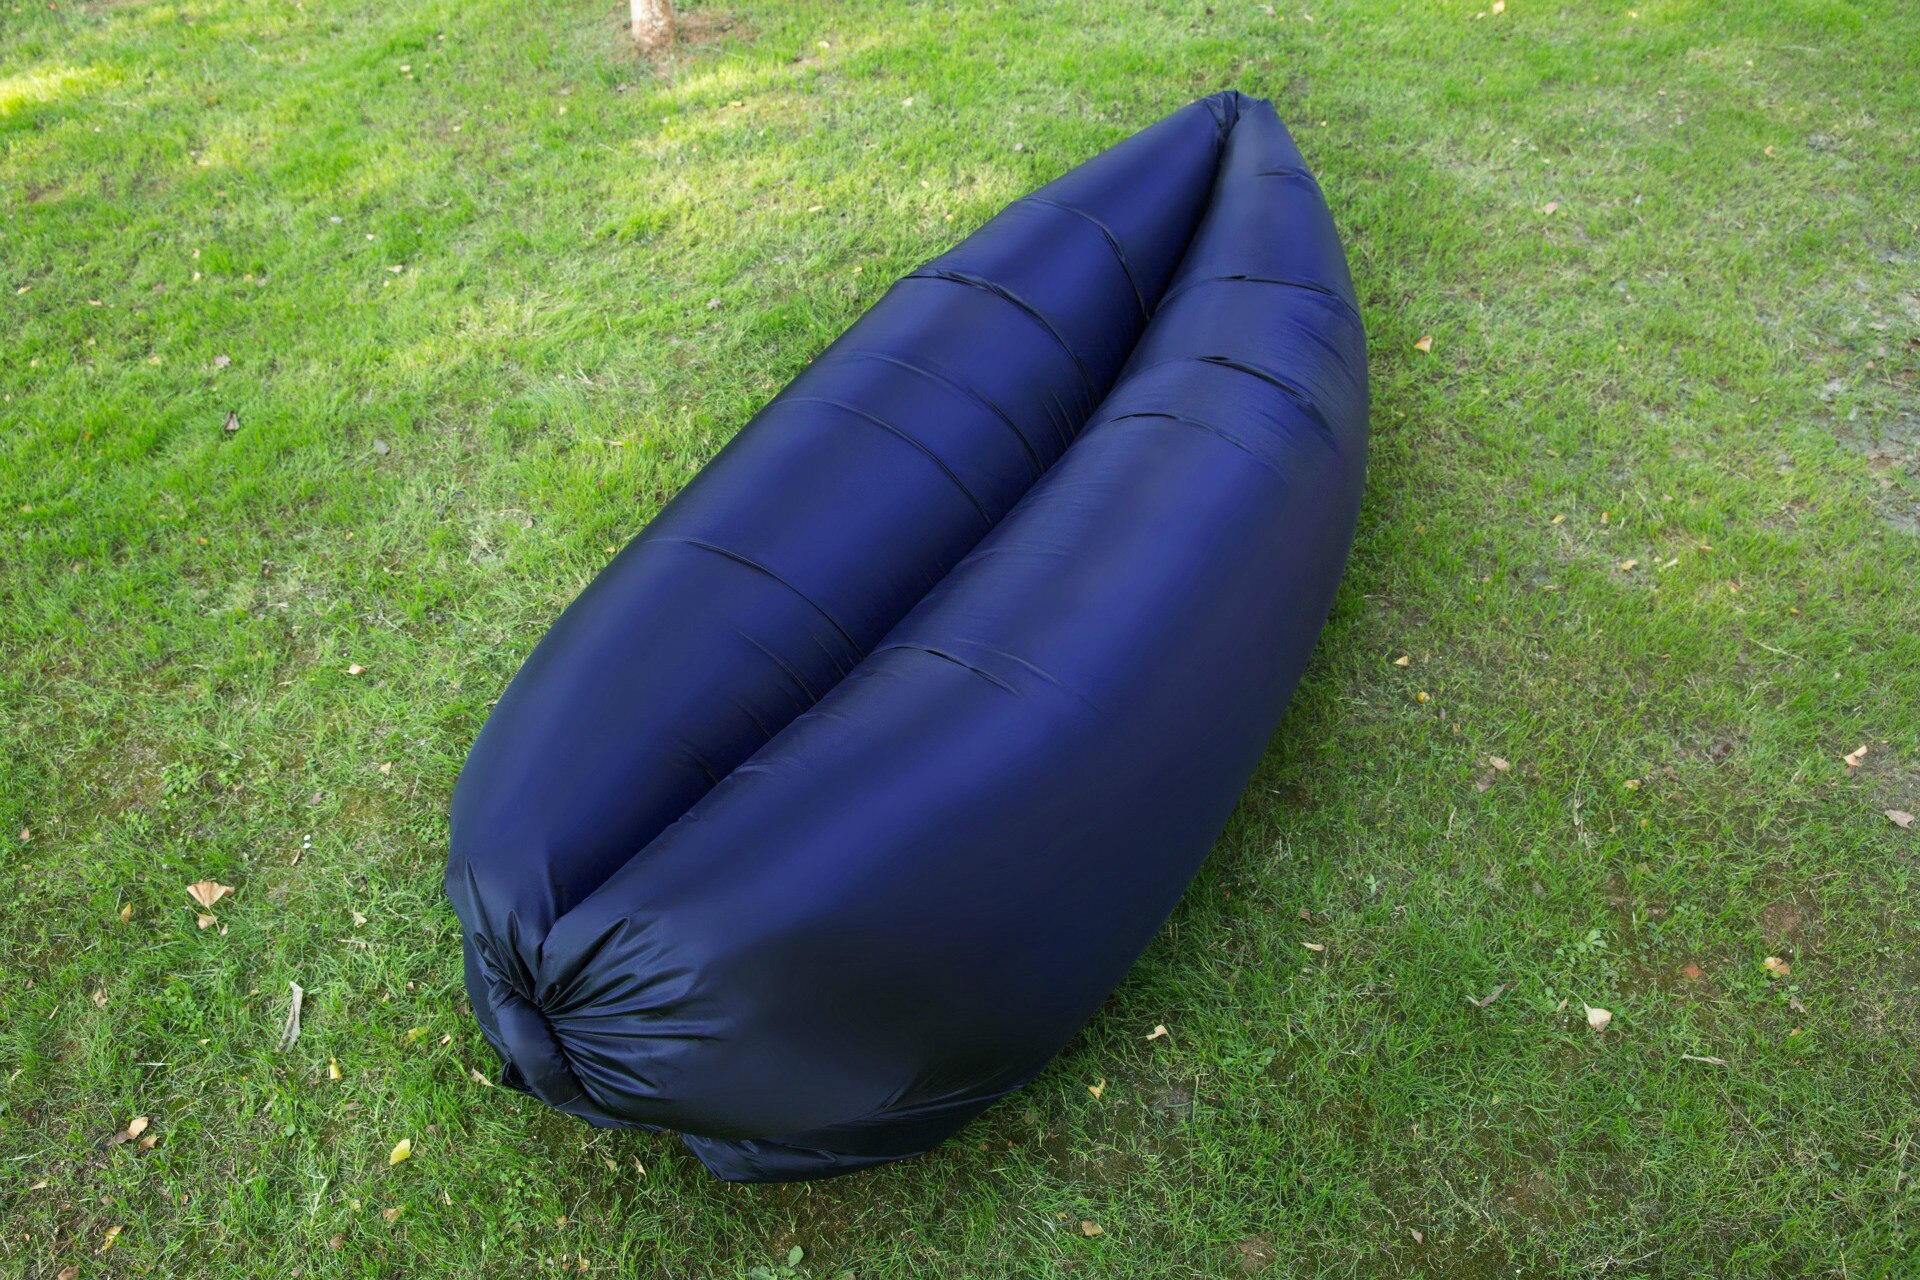 Lit d'air lit gonflable canapé pique-nique Airbag sac de plage paresseux canapé Pad lit gonflable pique-nique pique-nique coussin de couchage: Bleu